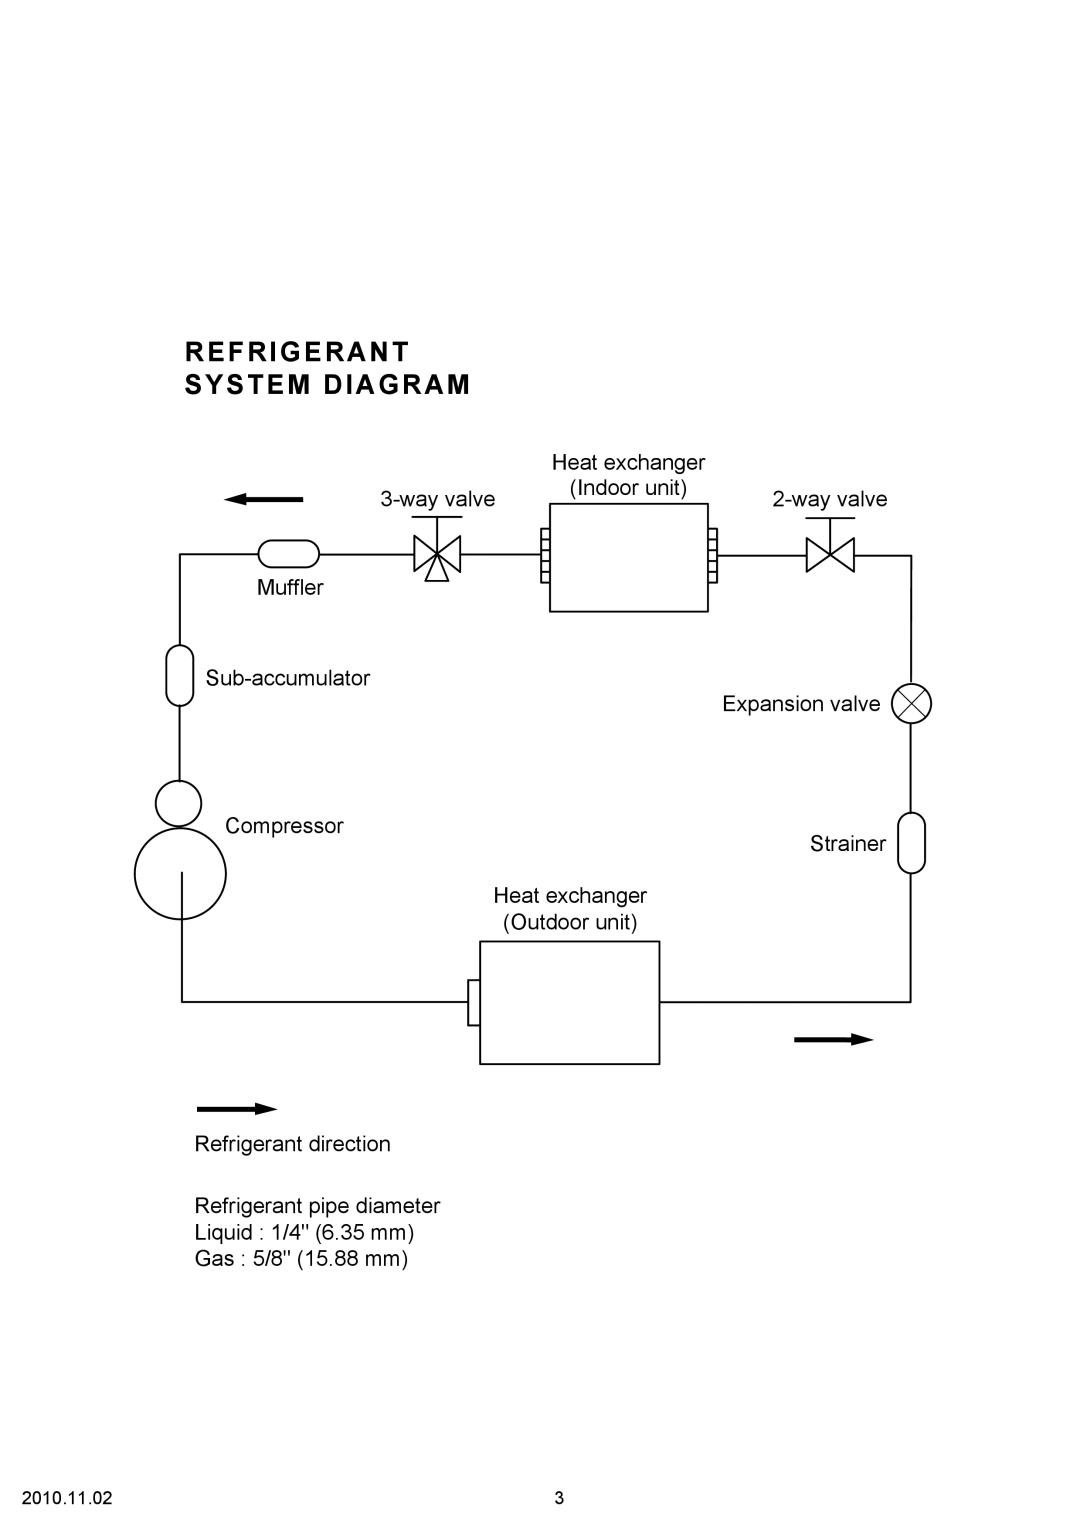 Friedrich MW24C3G Refrigerant System Diagram, Heat exchanger, wayvalve, Indoor unit, Outdoor unit Refrigerant direction 